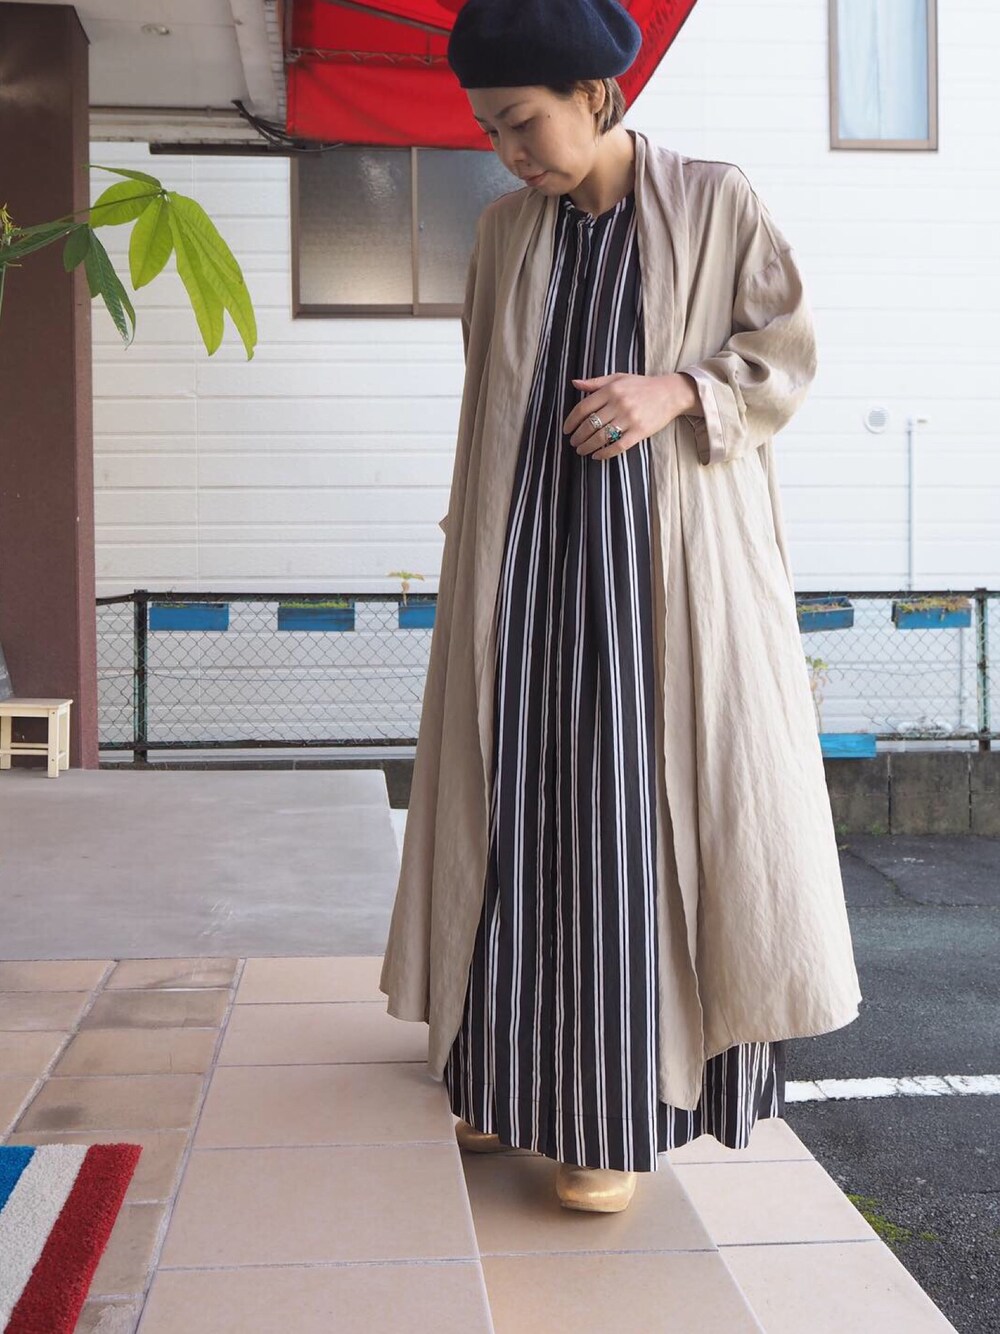 示す 批判的に クローン 50 代 ファッション ぽっちゃり ikedalawpatent.jp